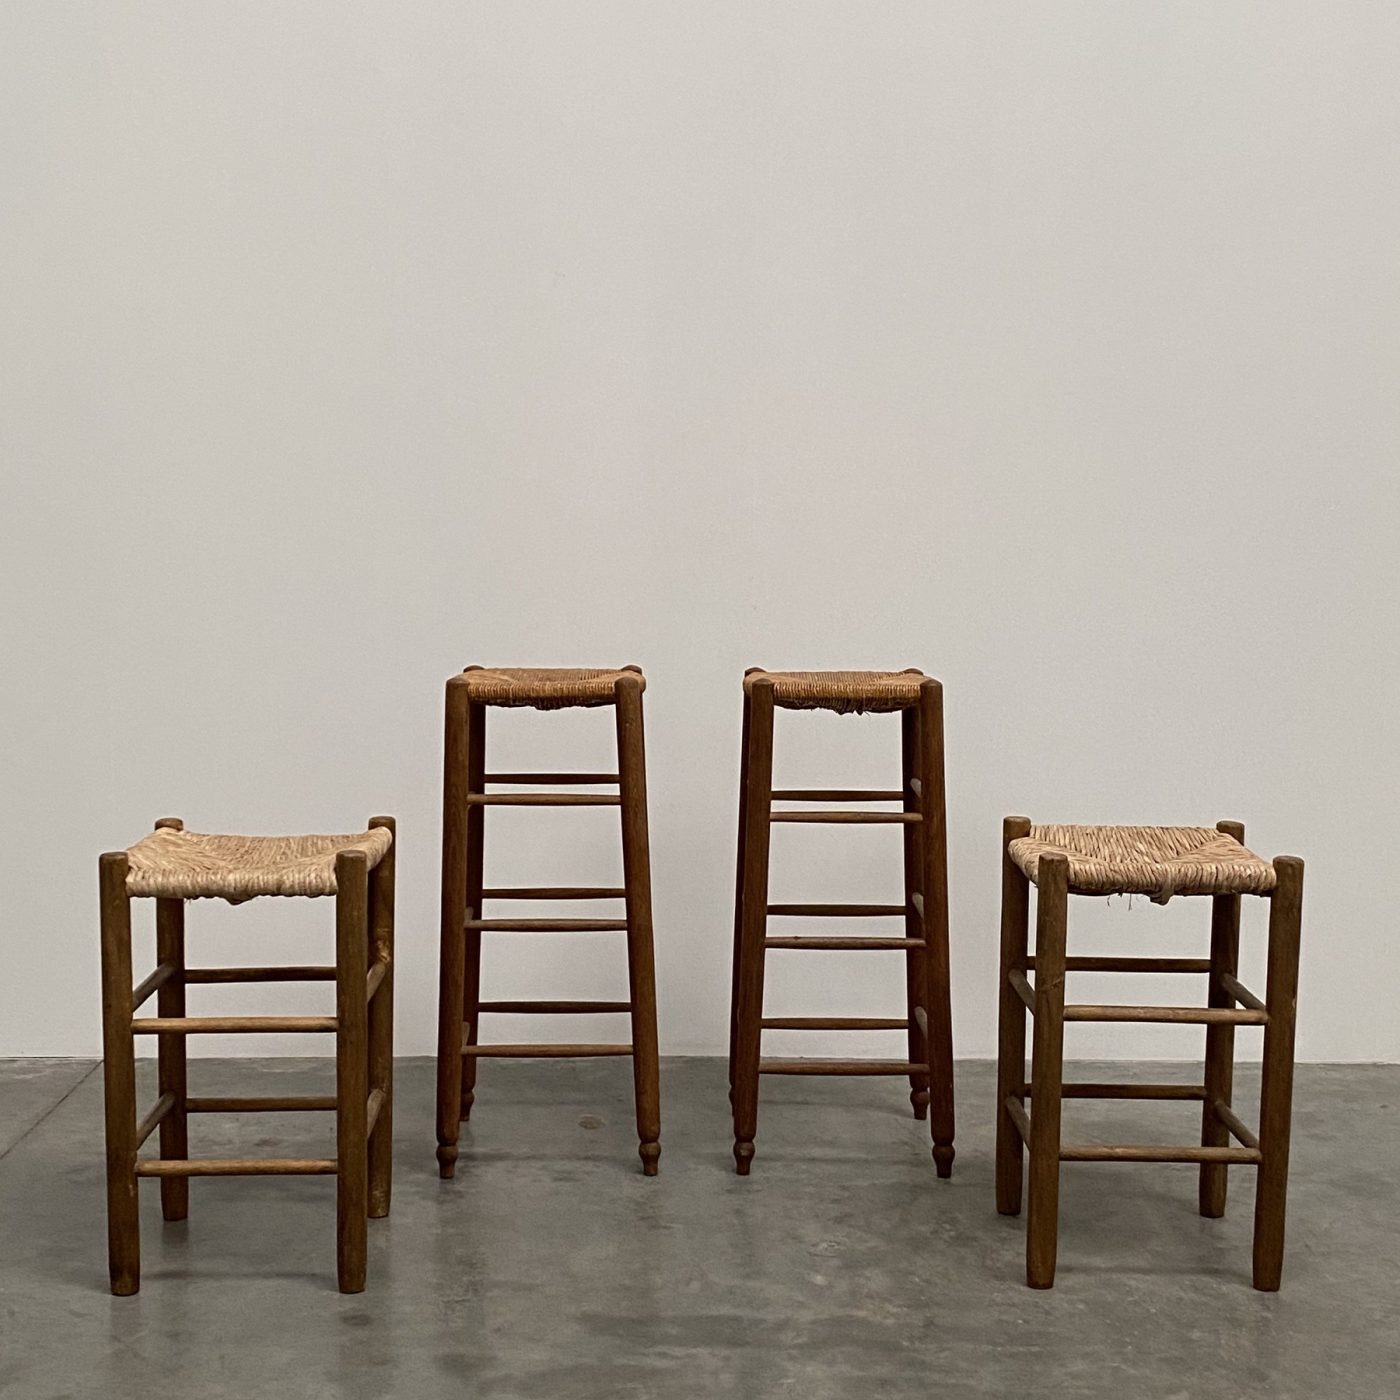 objet-vagabond-french-stools0001